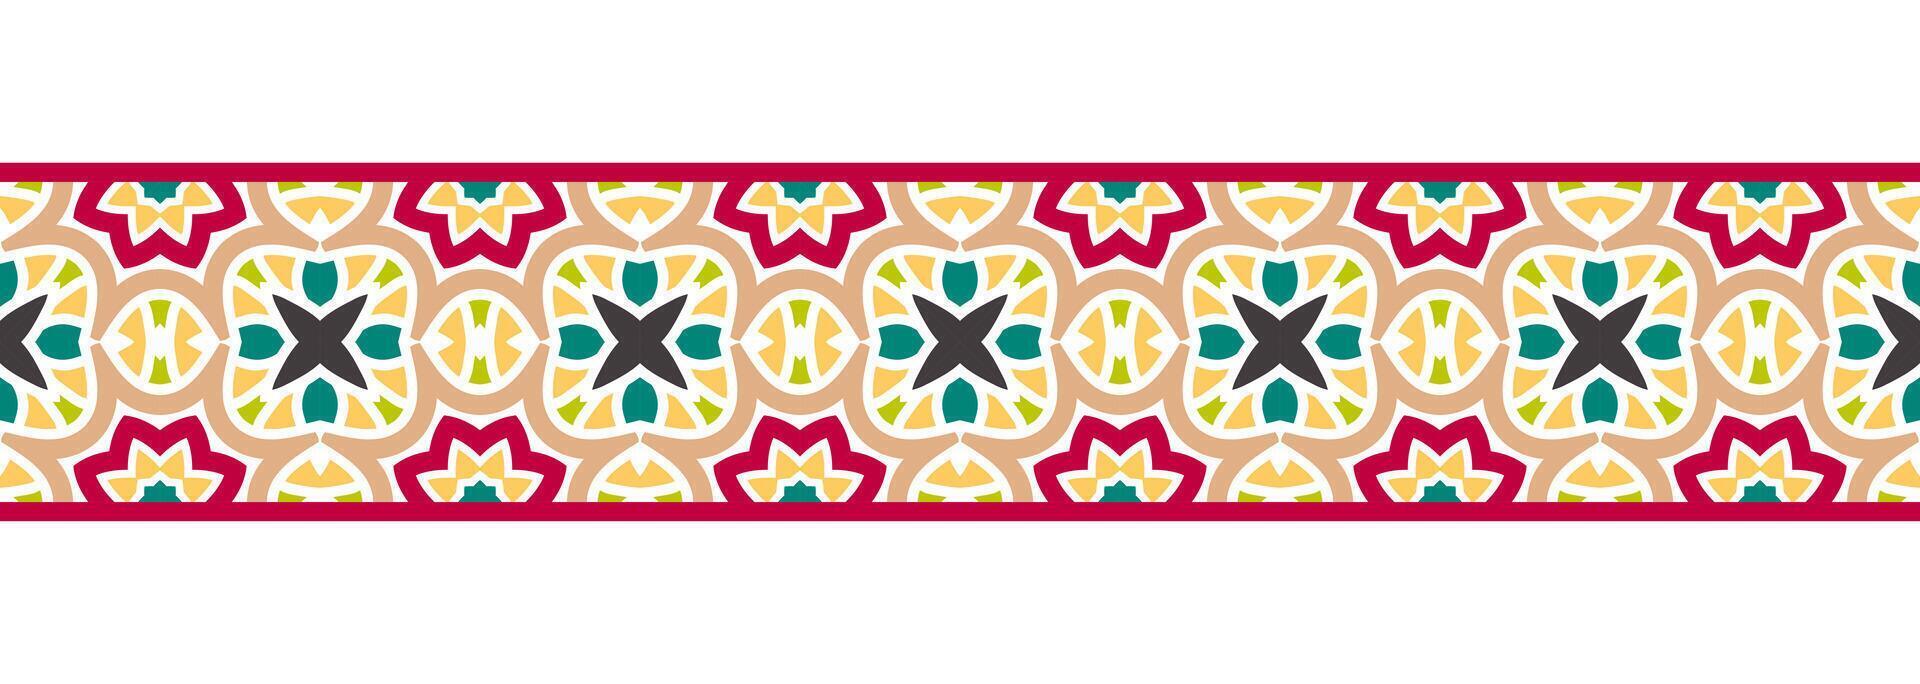 grens lijn naadloos achtergrond. decoratief ontwerp naadloos sier- mozaïek- grens patroon. islamitisch, Indisch, Arabisch motieven. abstract bloem vector